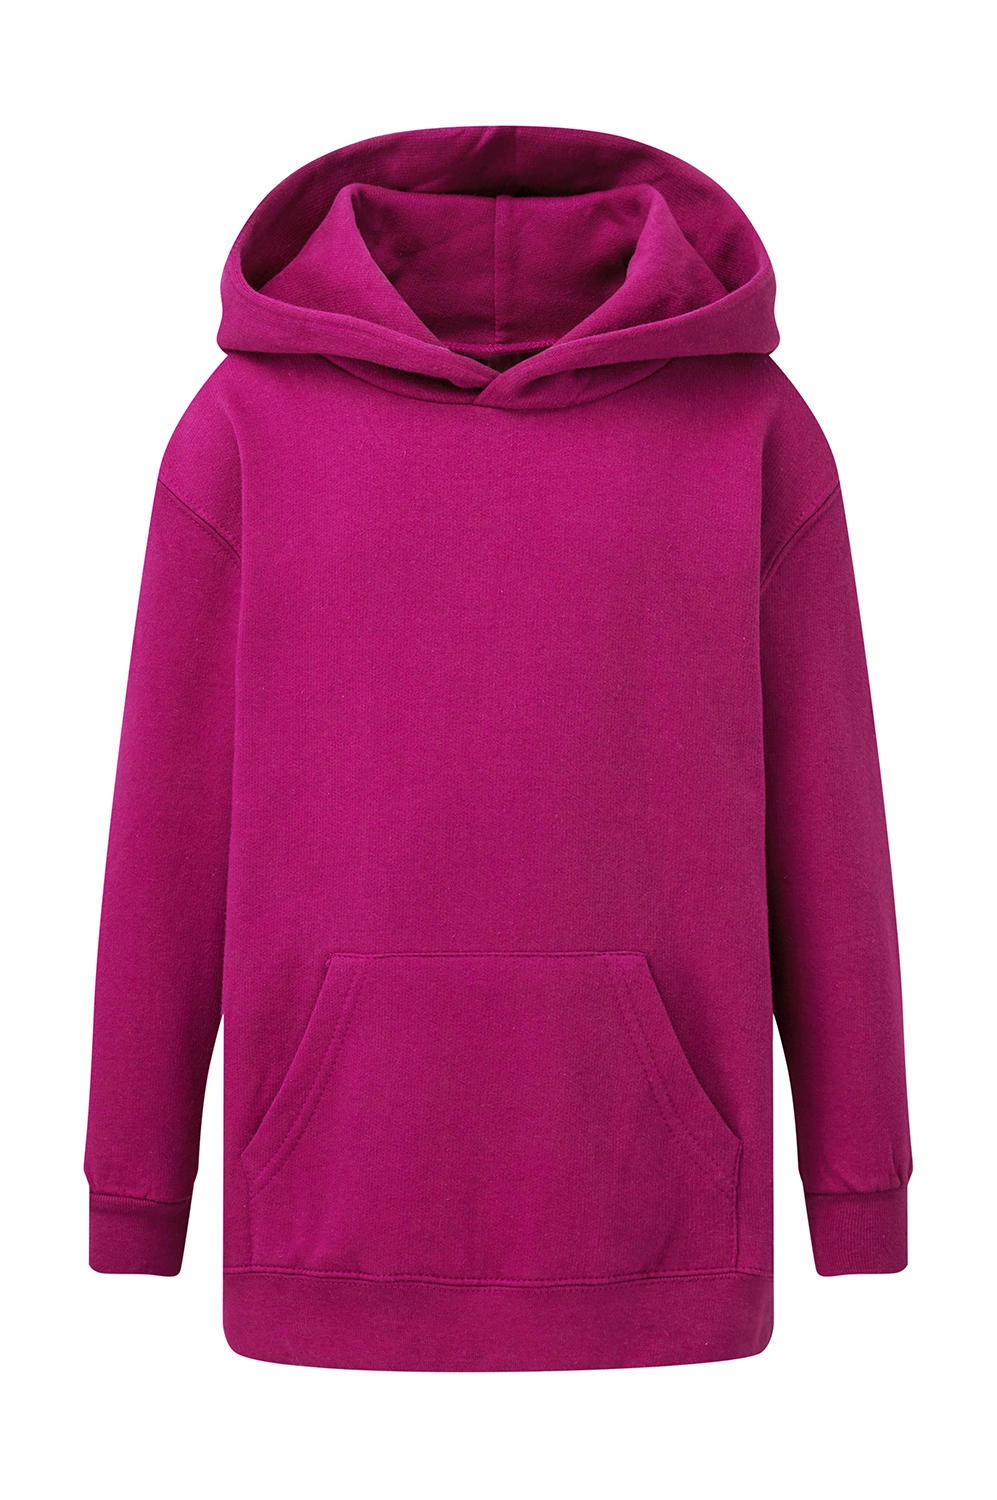 Hooded Sweatshirt Kids zum Besticken und Bedrucken in der Farbe Dark Pink mit Ihren Logo, Schriftzug oder Motiv.